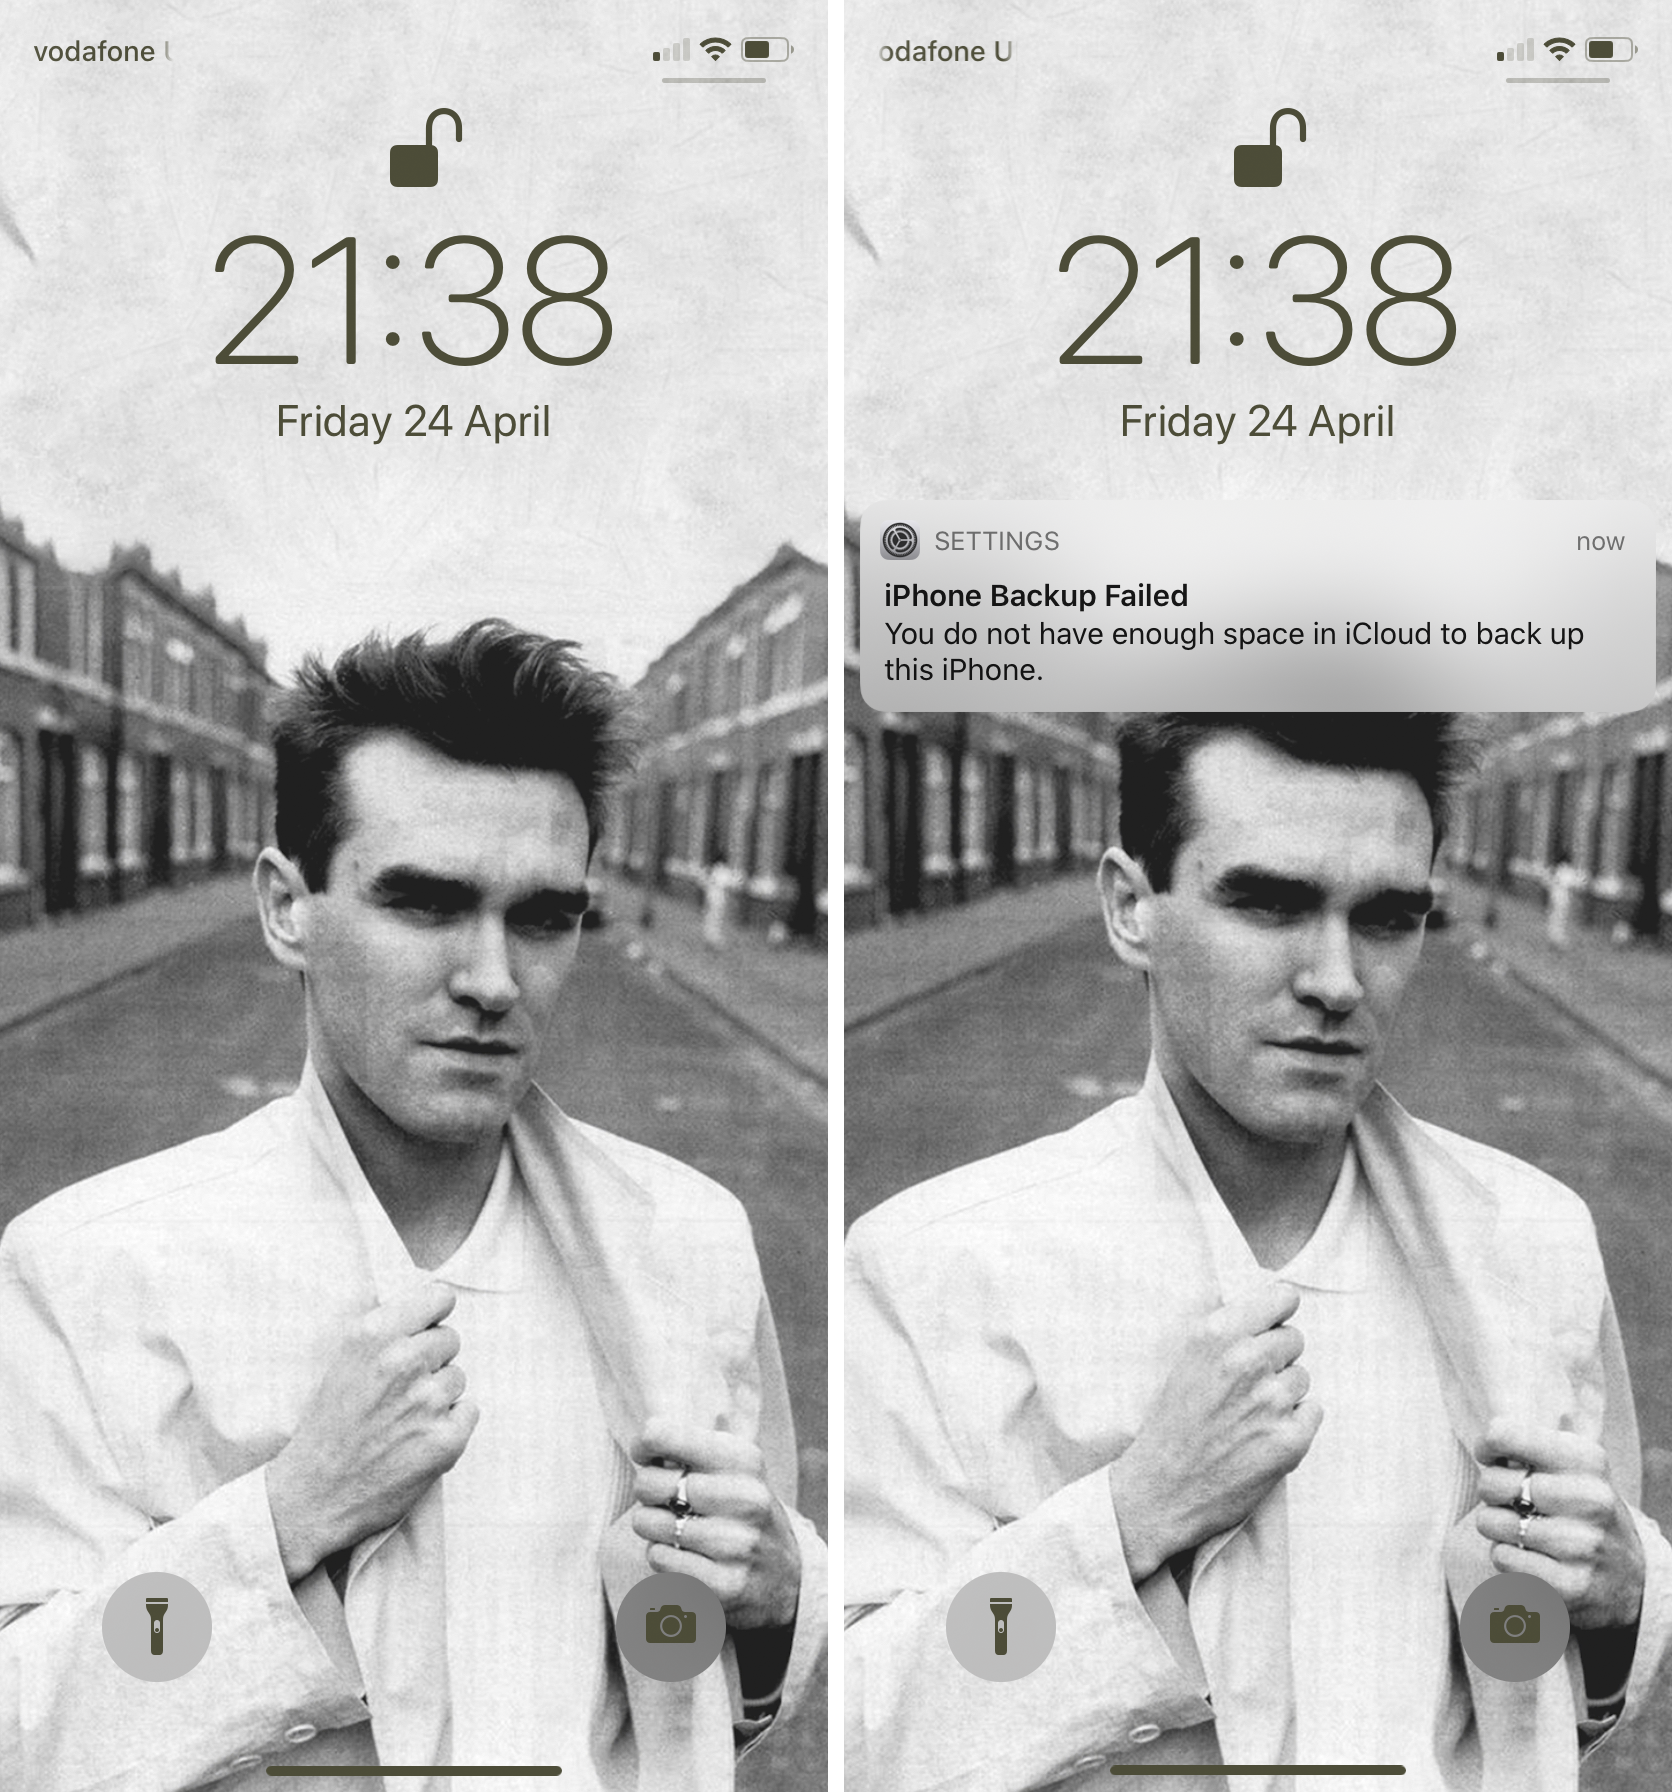 Morrissey Wallpapers